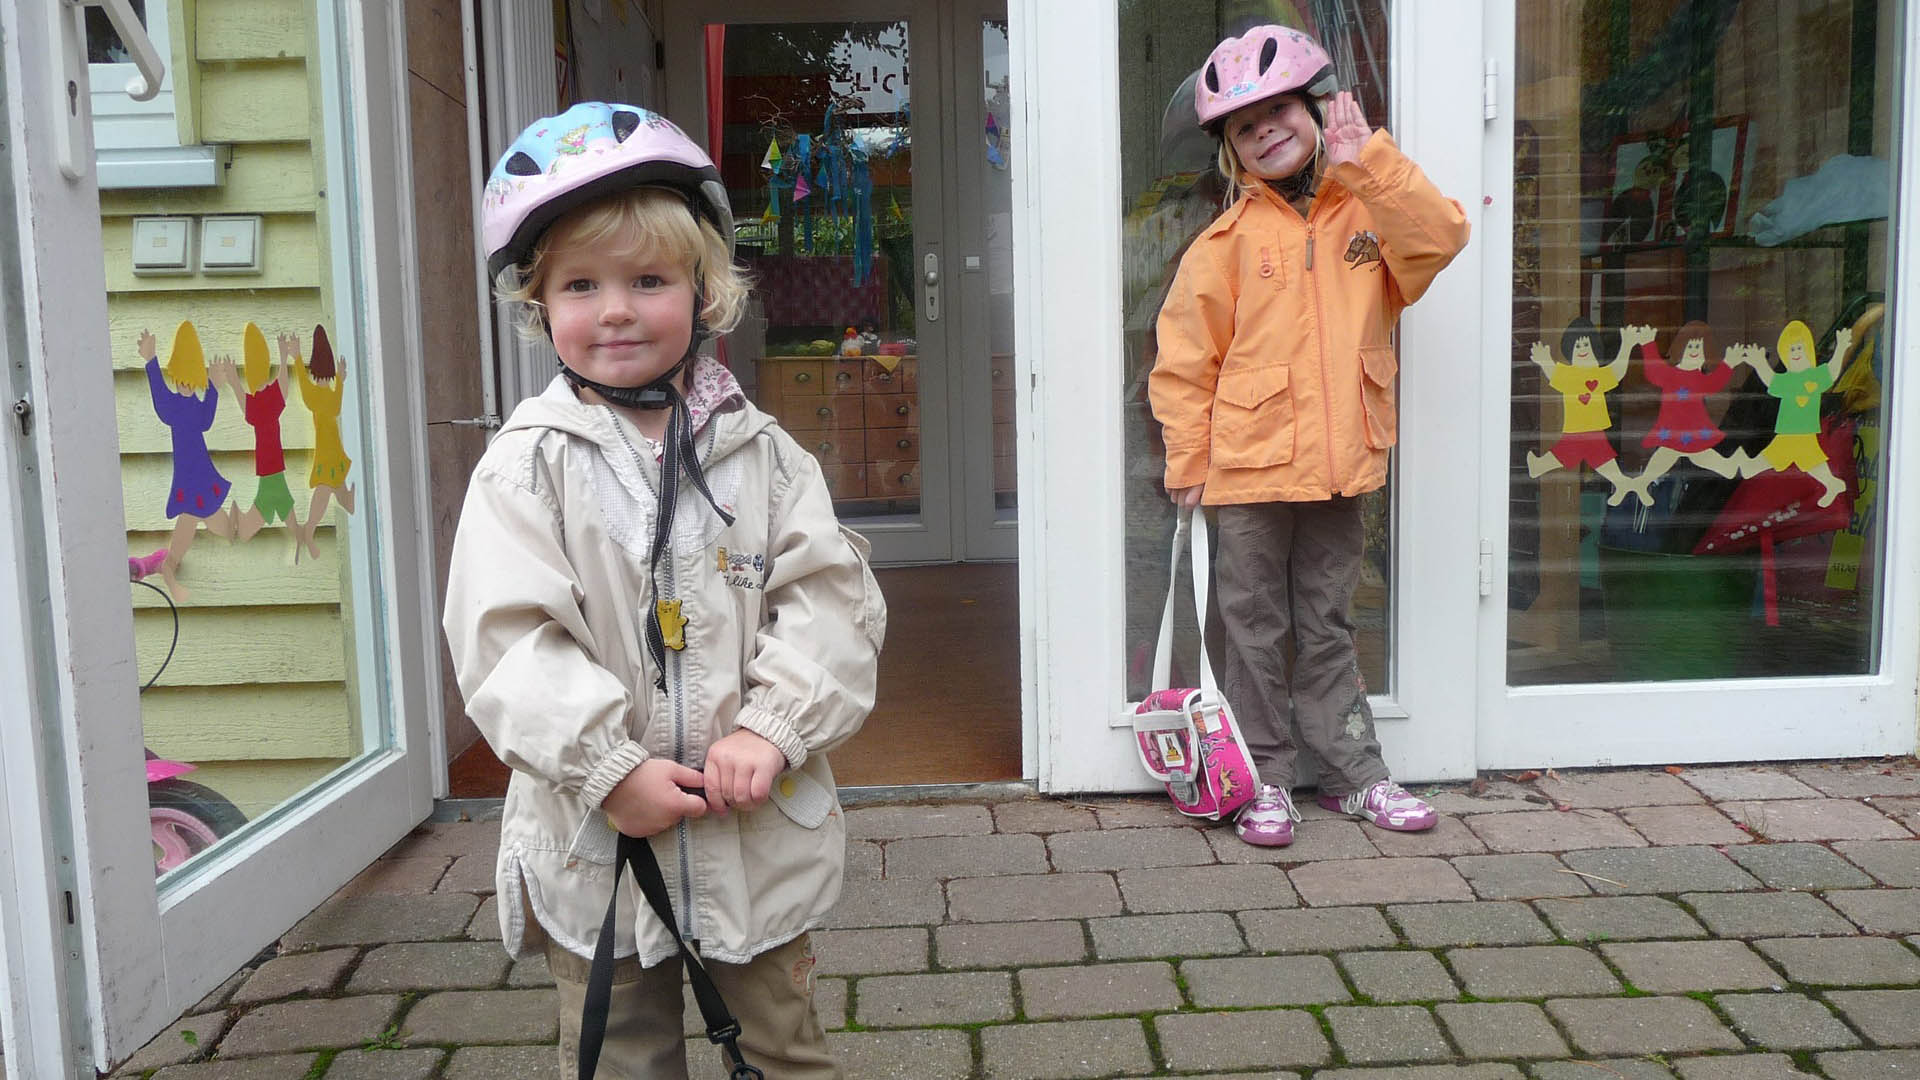 Vor dem Eingangsbereich eines Kindergartens stehen zwei kleine Mädchen mit Fahrradhelmen gekleidet.